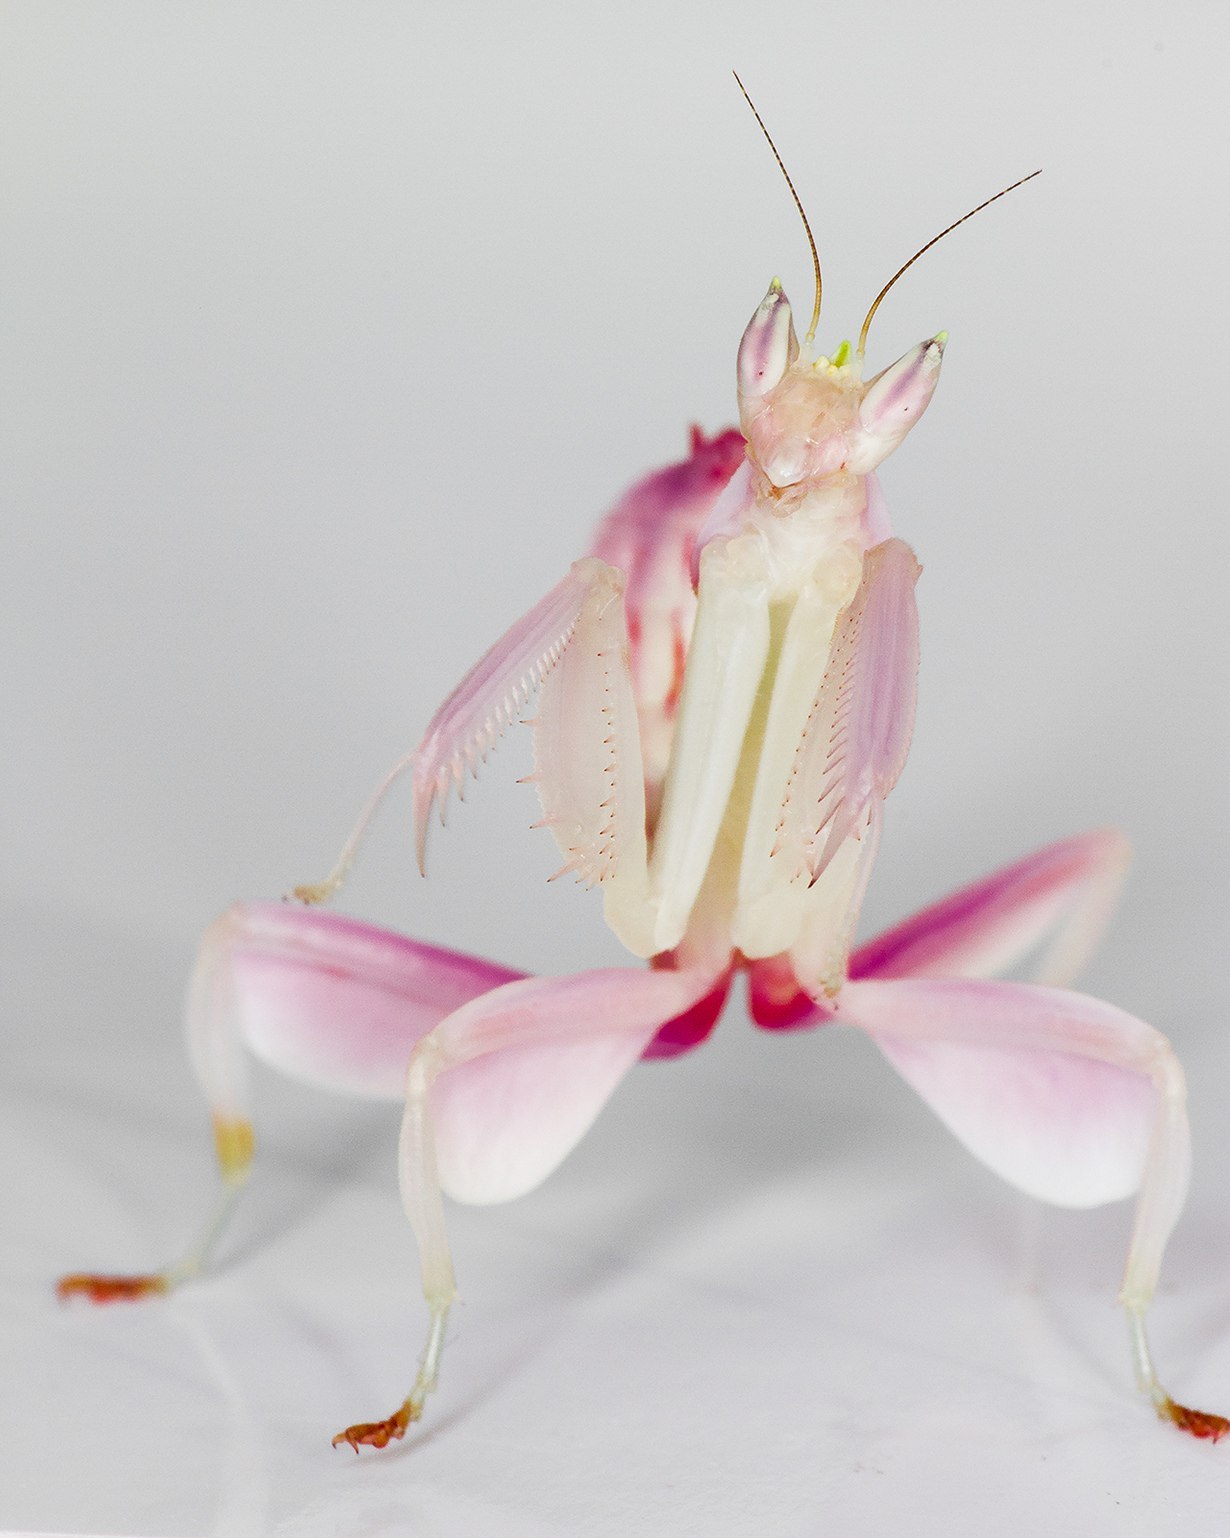 Orchid mantis mukubwinya kwayo kose